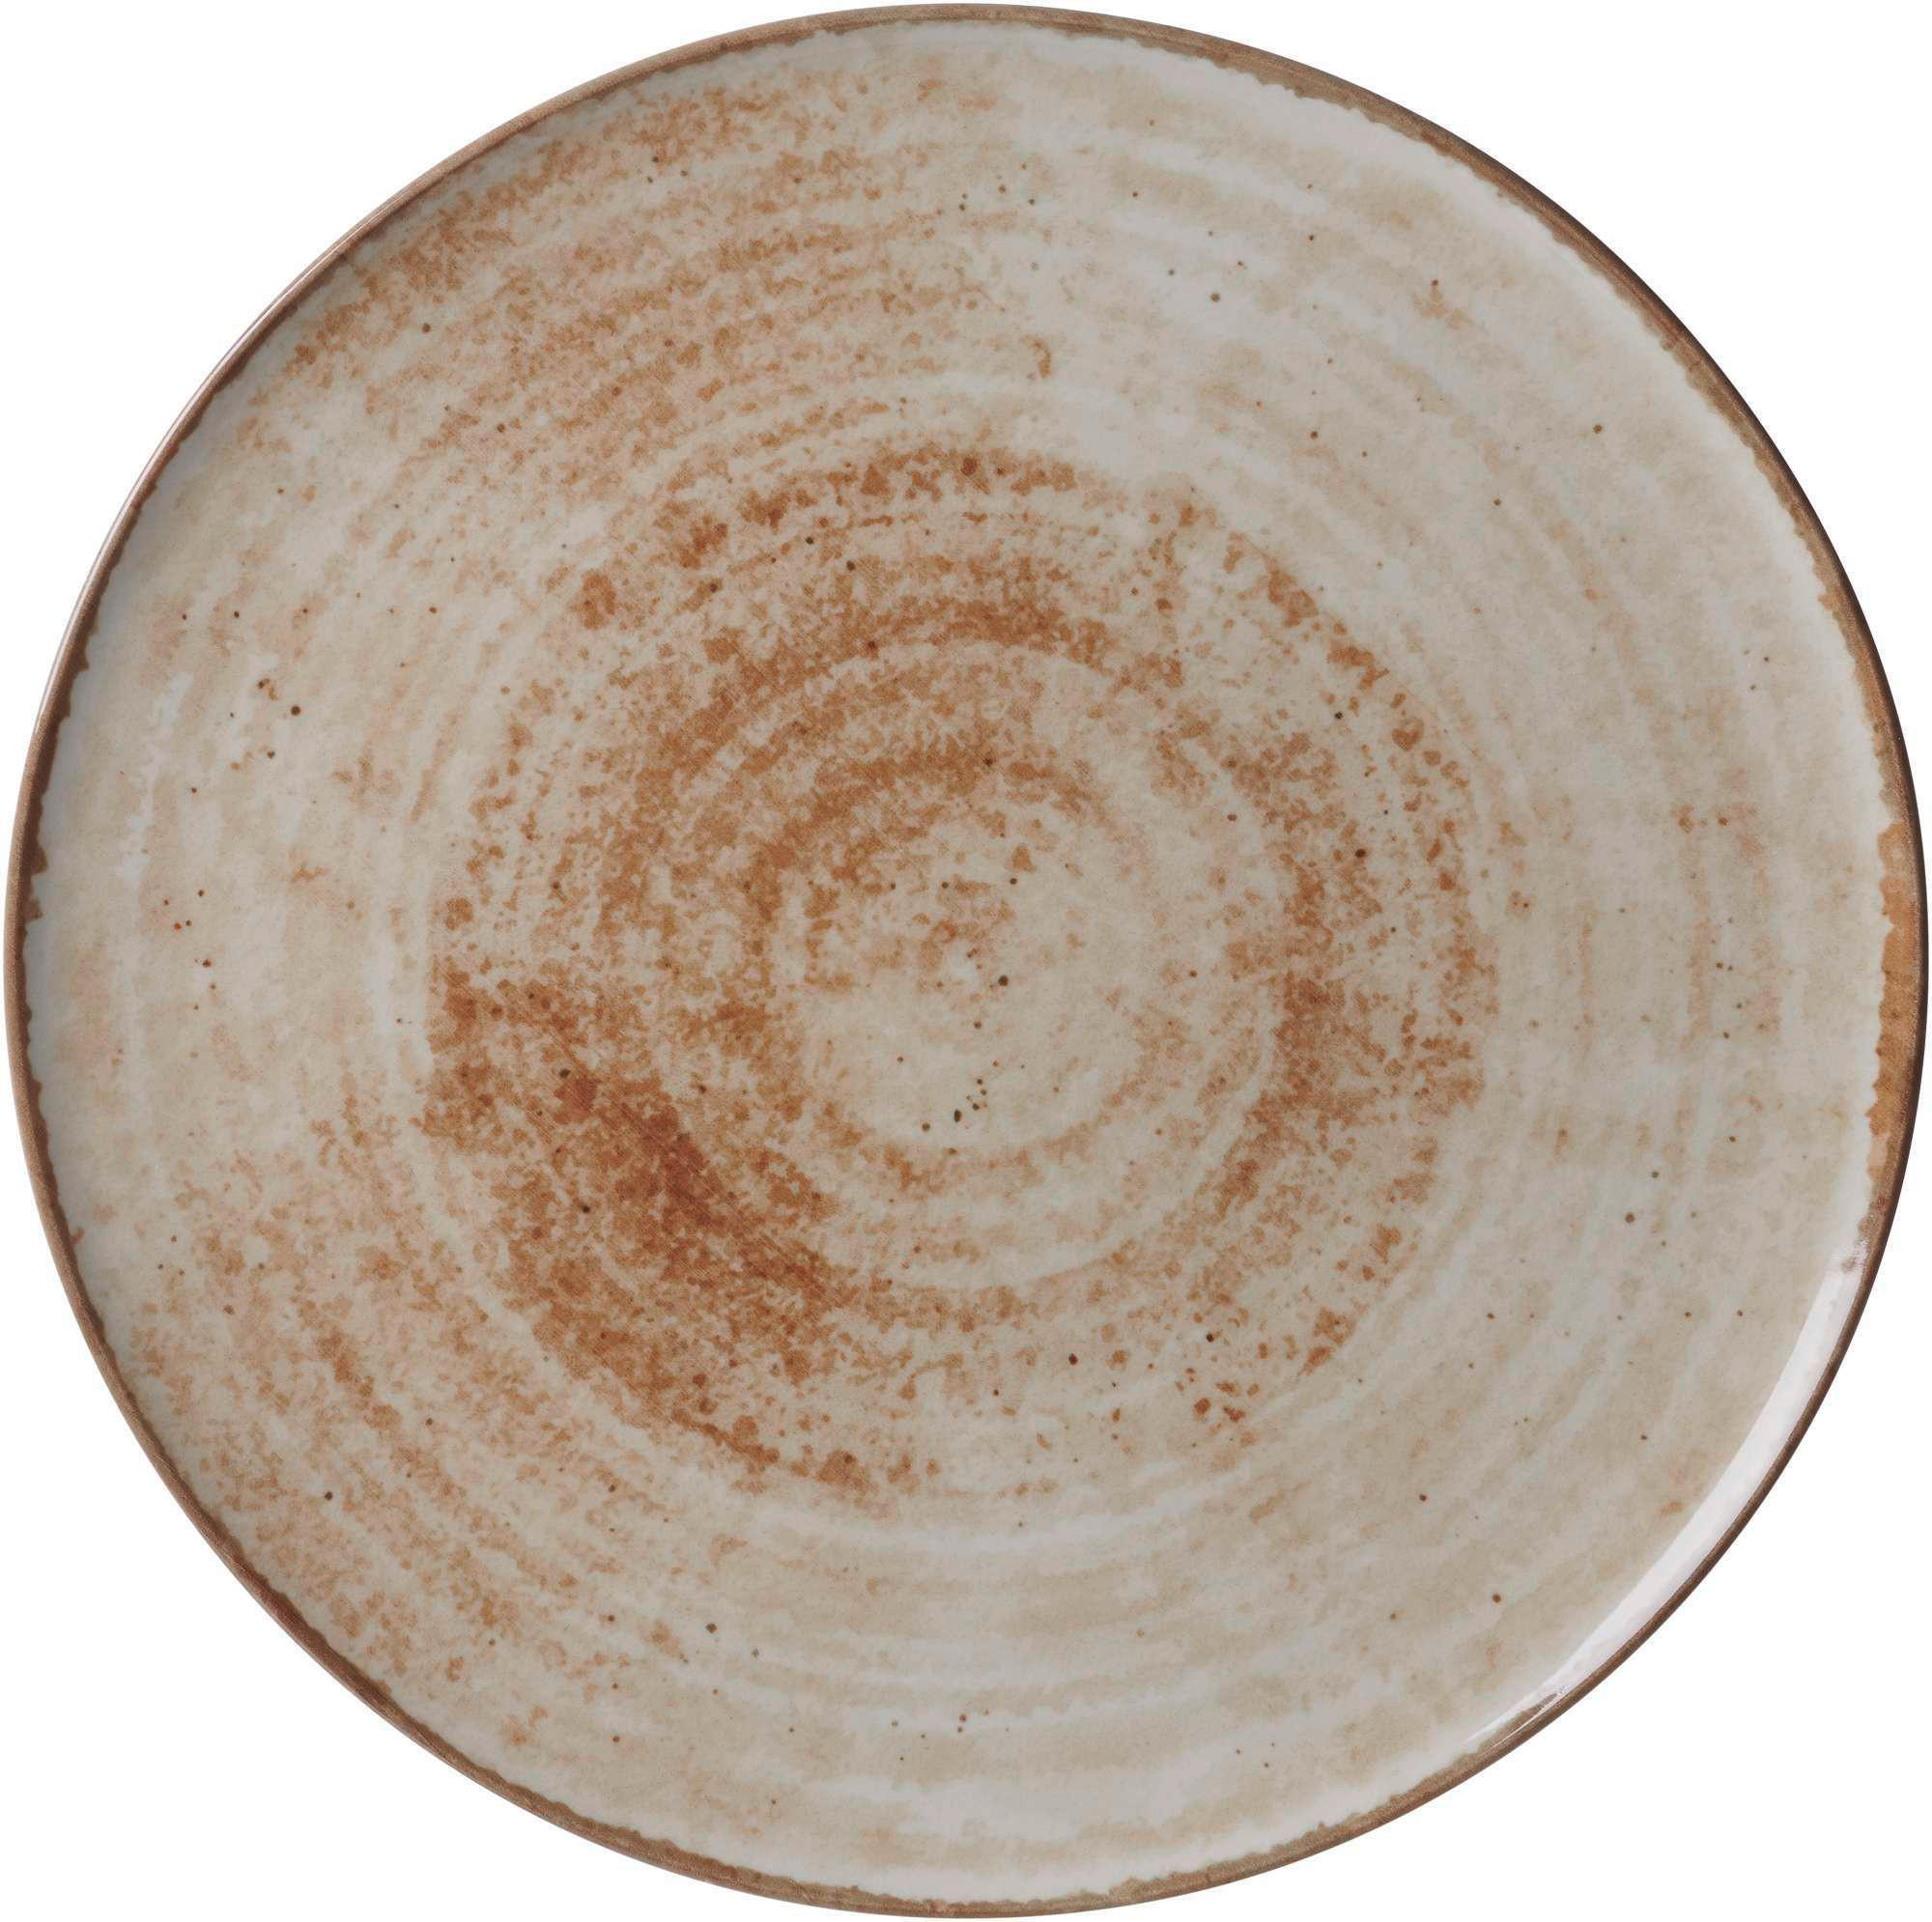 PIZZATELLER Porzellan Siena  - Beige/Braun, Basics, Keramik (32cm) - Ritzenhoff Breker